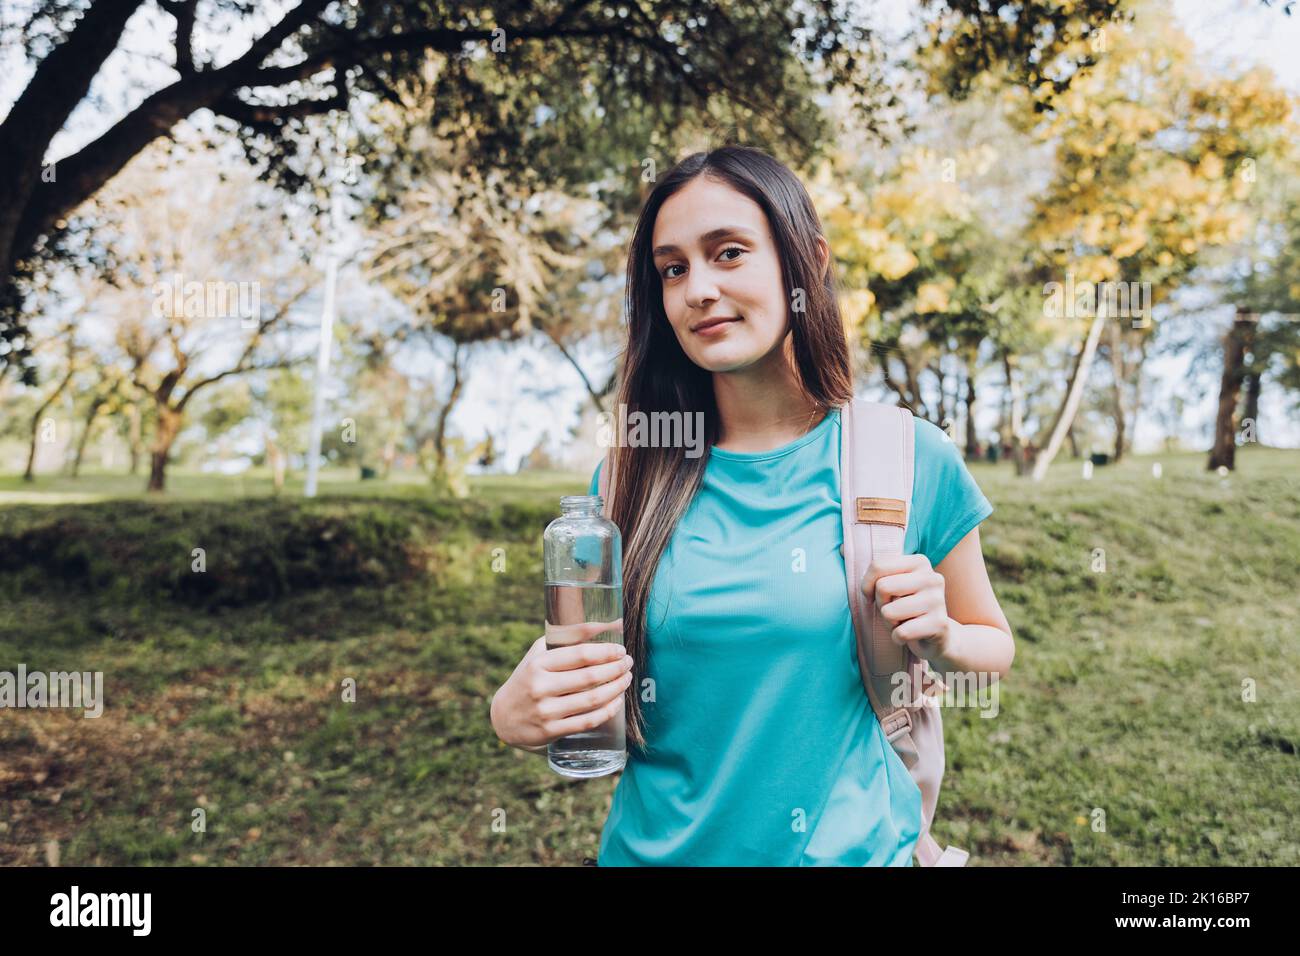 Jeune fille portant un t-shirt turquoise et un sac à dos rose, tenant une bouteille de verre avec de l'eau dans la nature. Ressources naturelles Banque D'Images